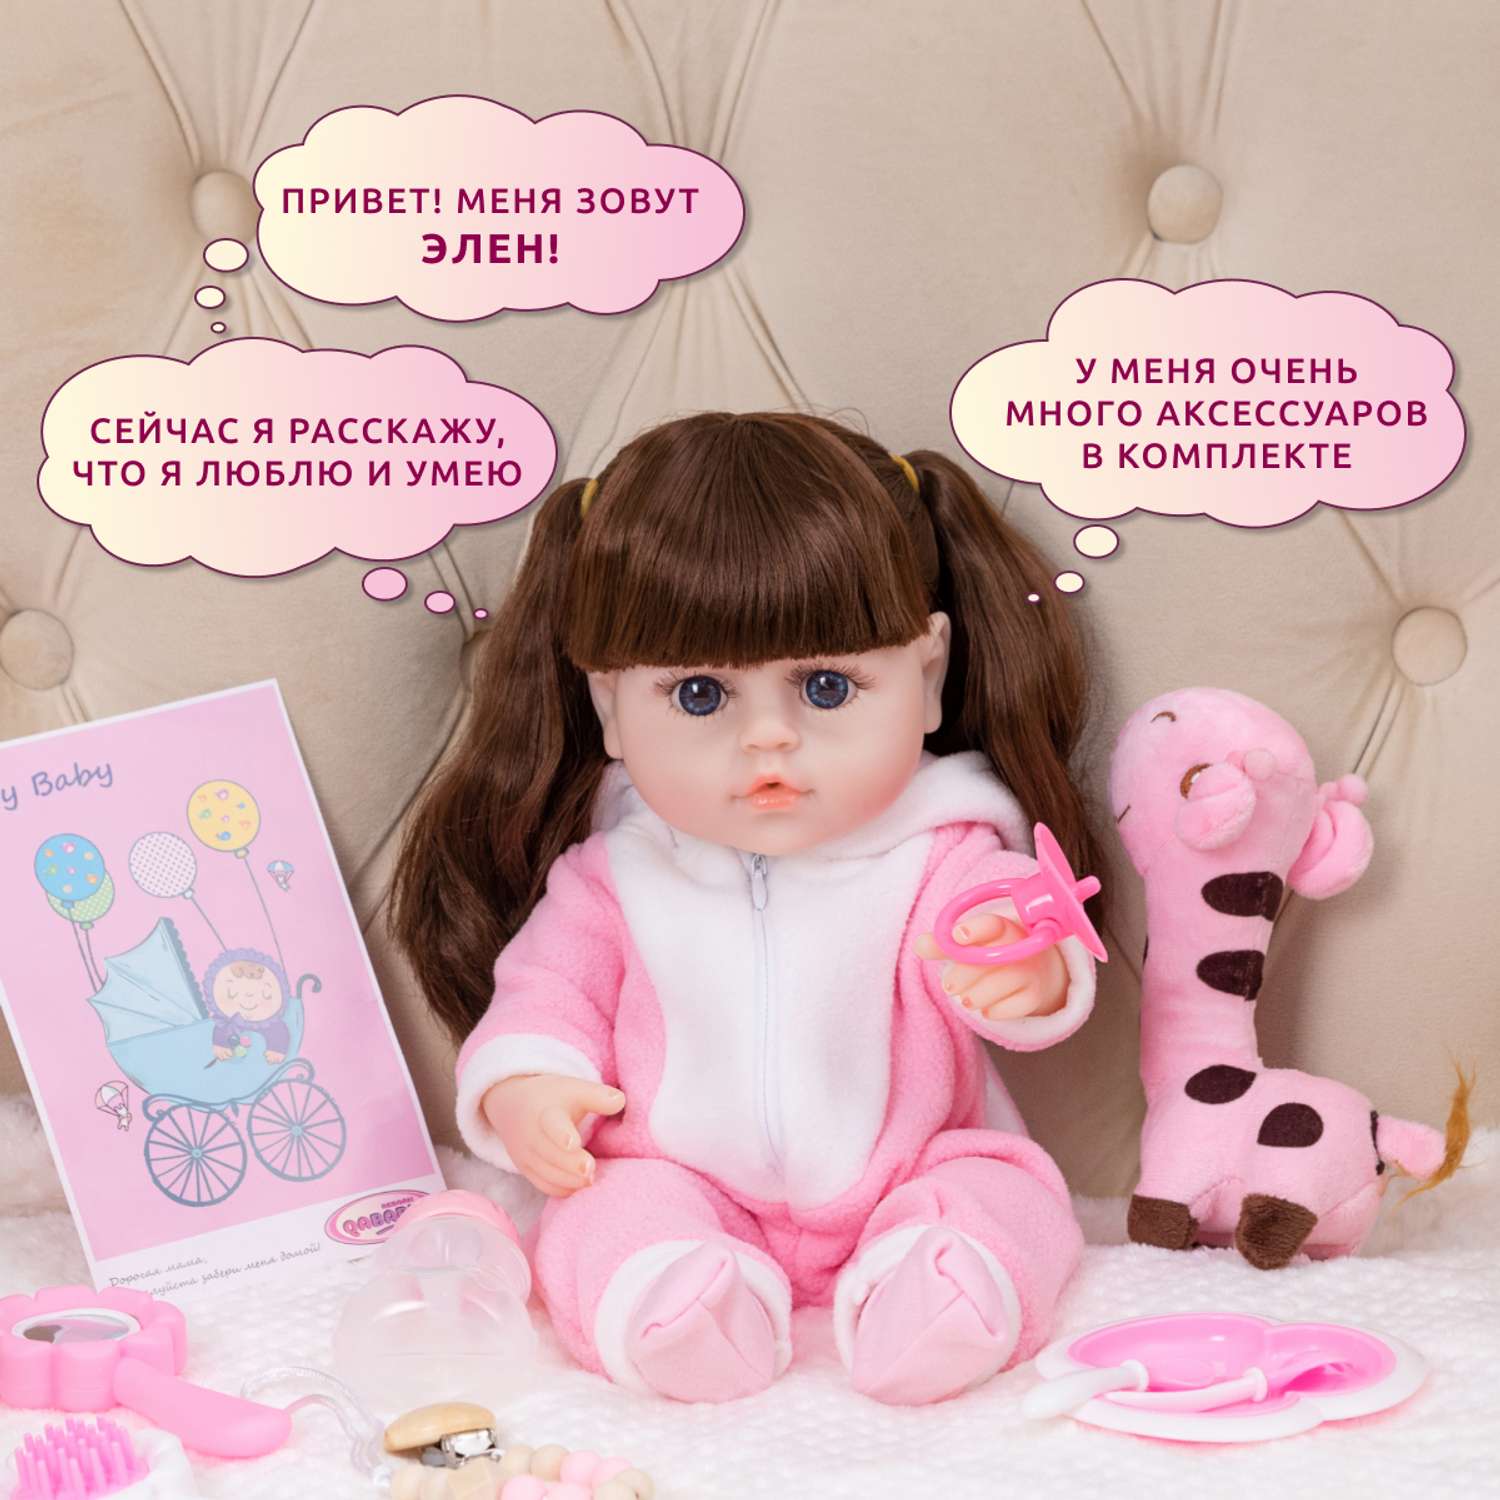 Кукла Реборн QA BABY Яна девочка интерактивная Пупс набор игрушки для ванной для девочки 38 см 3812 - фото 2